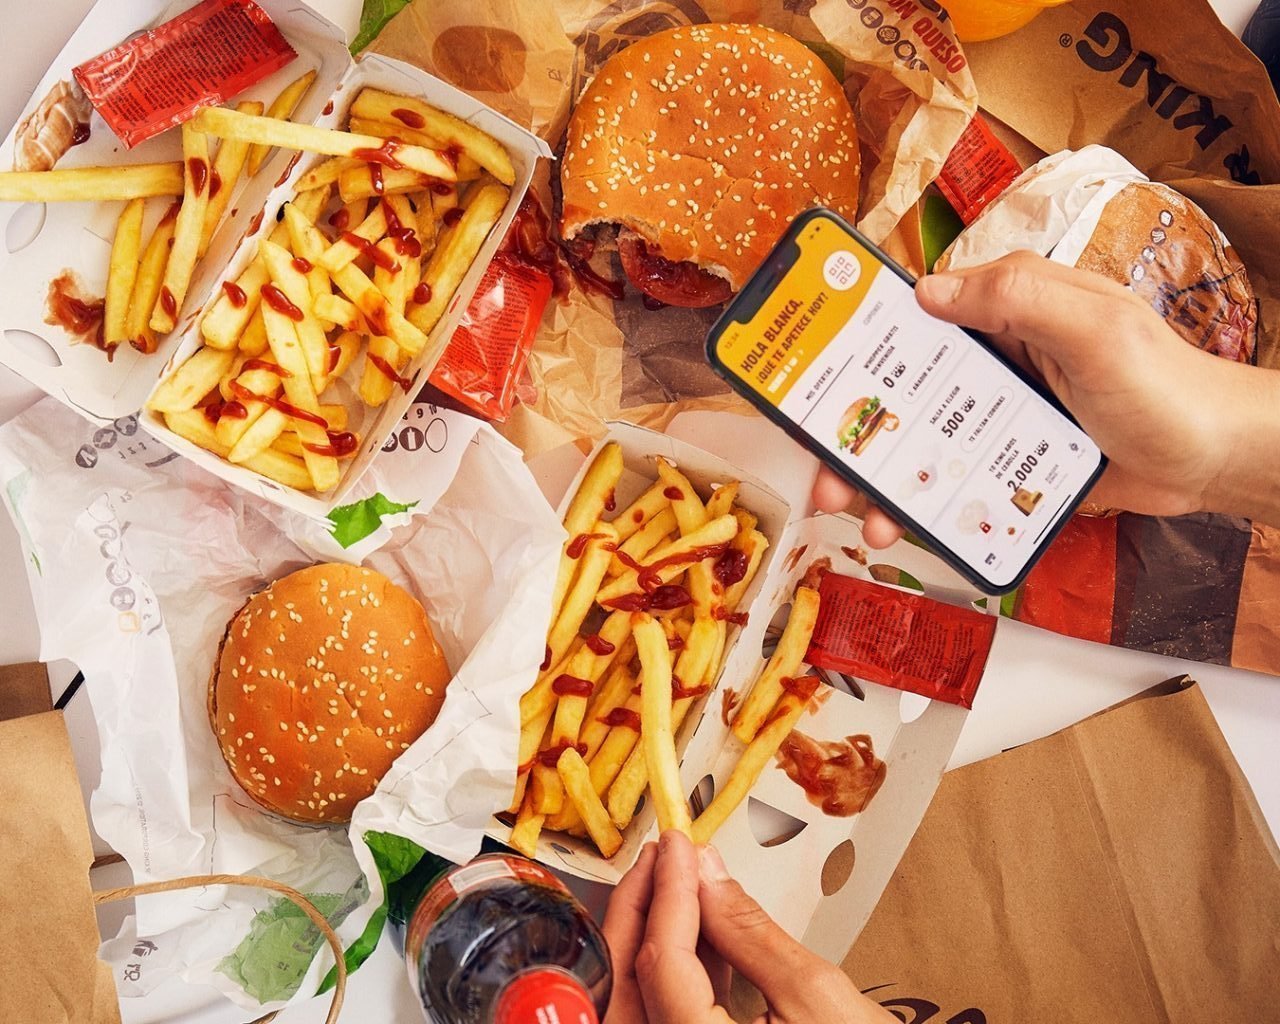 Así es como Burger King apuesta por la autenticidad de la comida